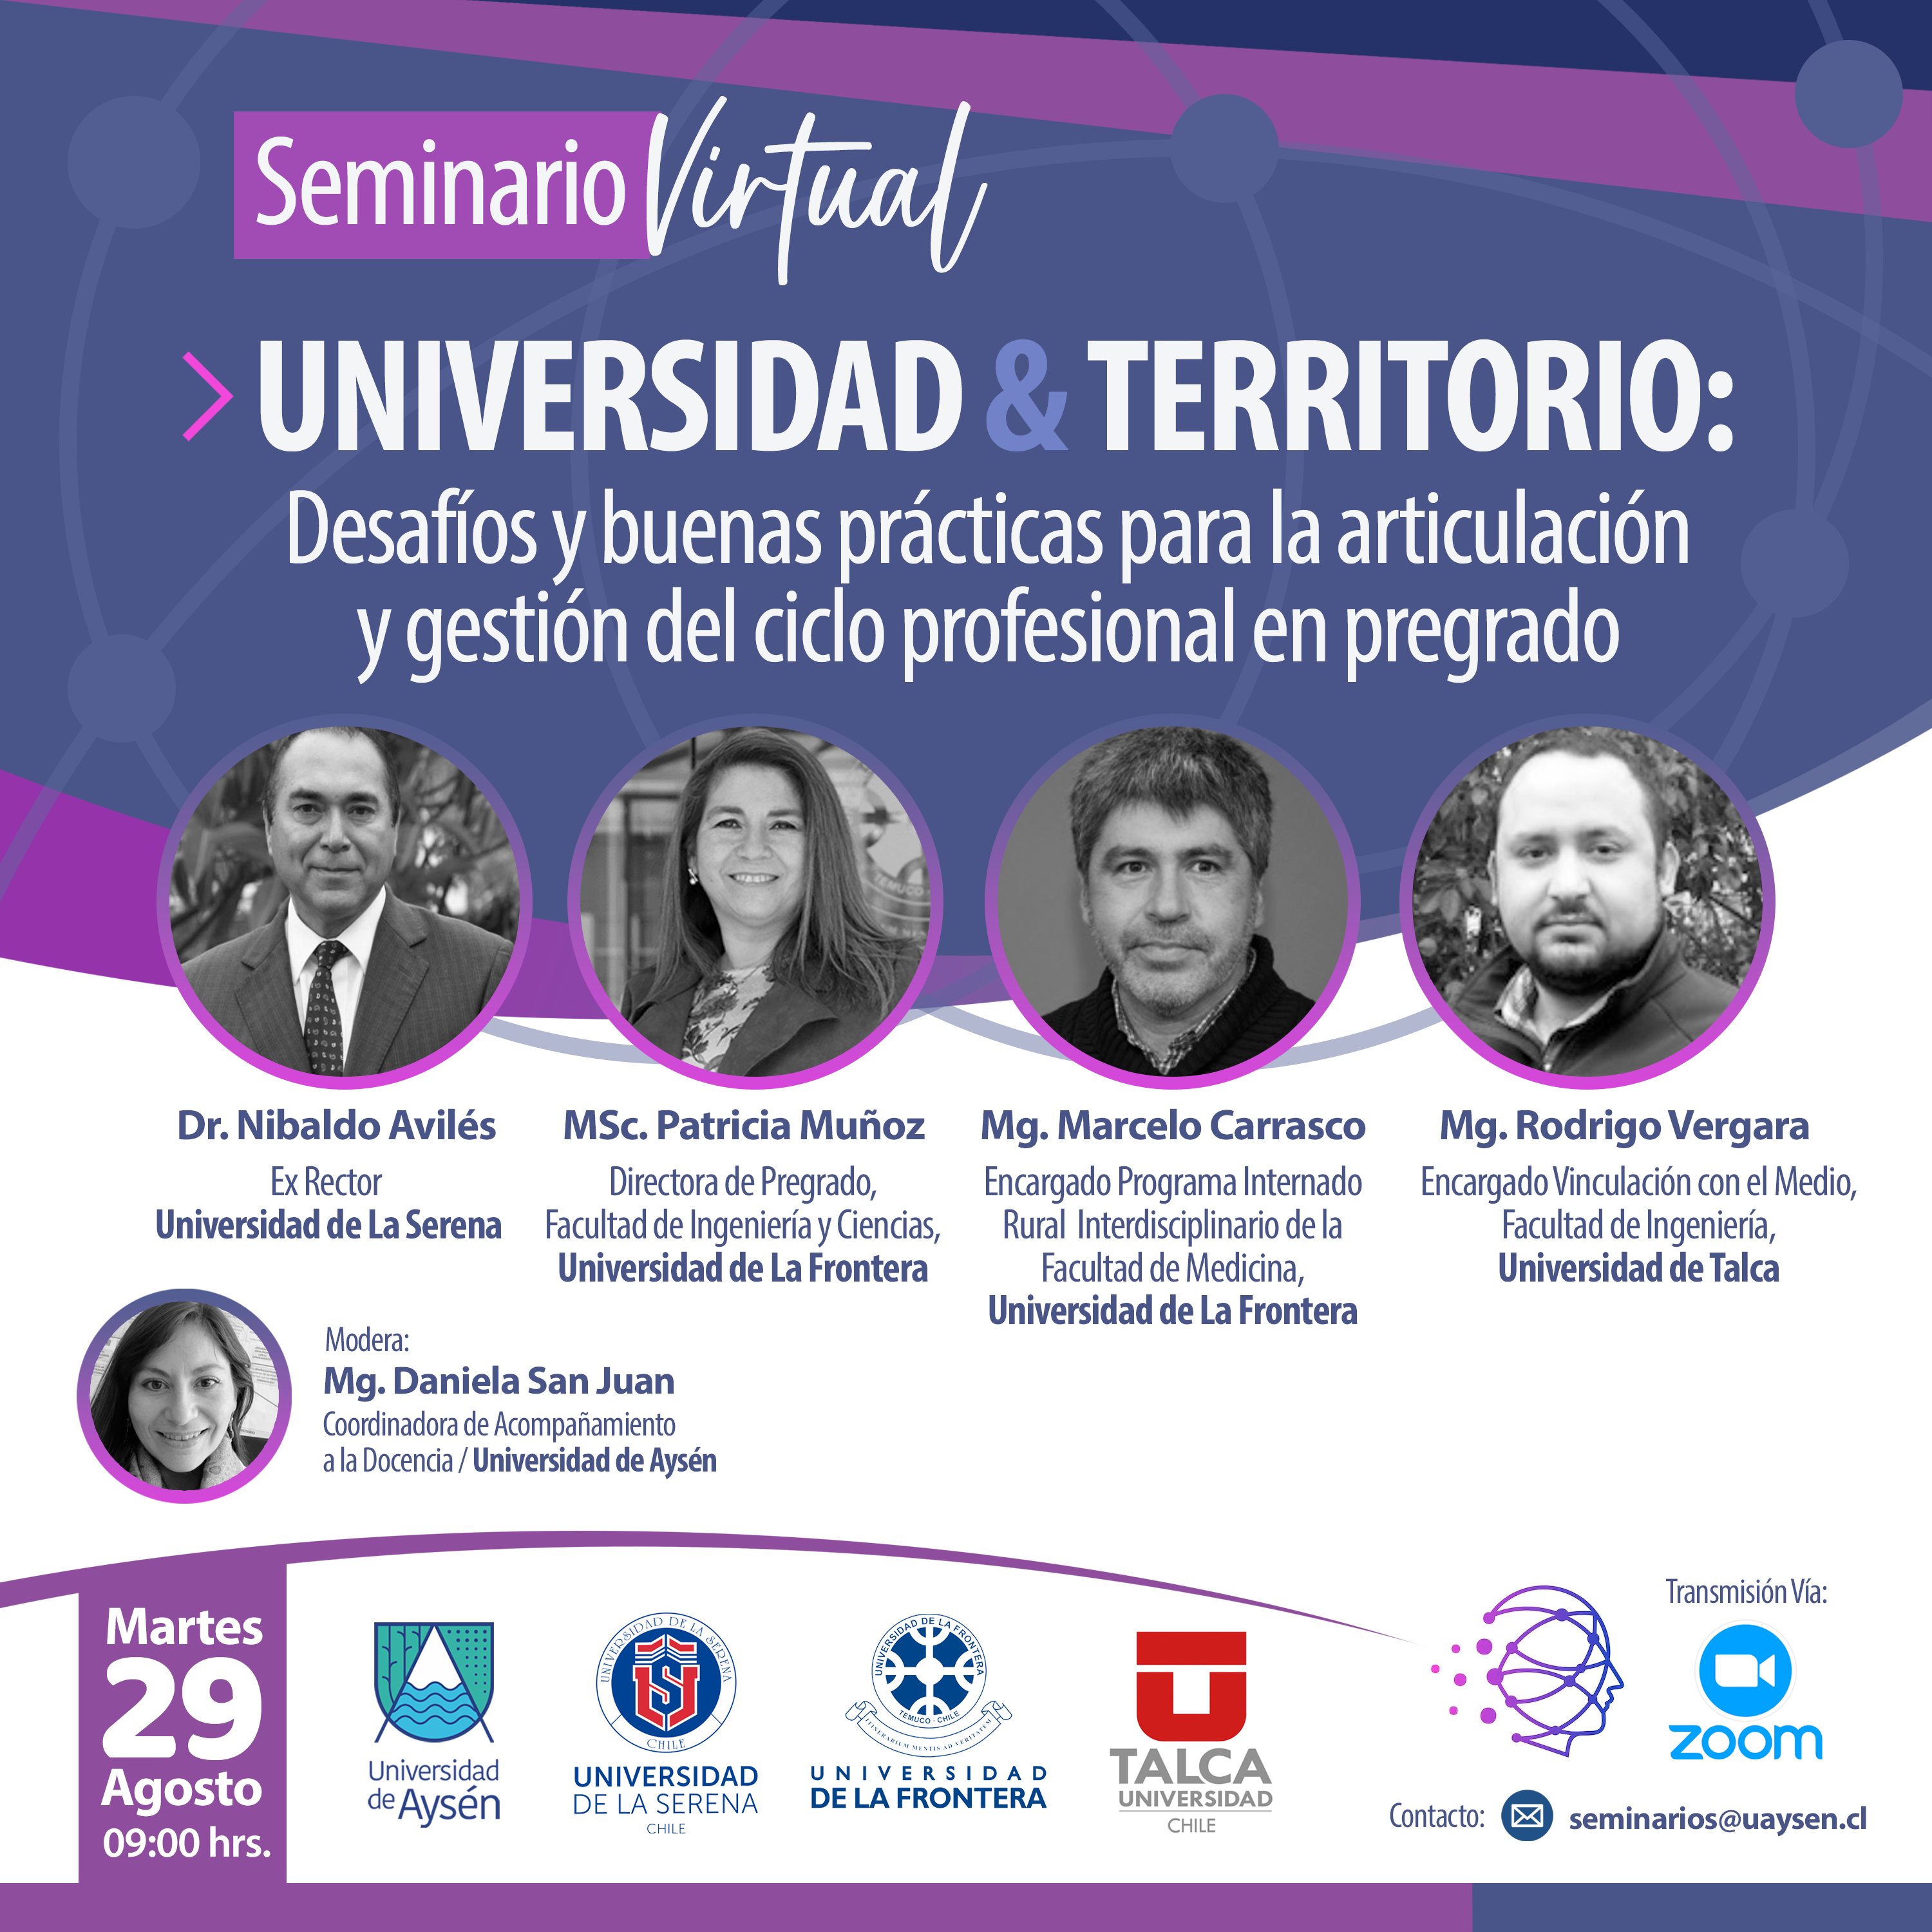 Seminario virtual Universidad y territorio: Desafíos y buenas prácticas para la articulación y gestión del ciclo profesional en pregrado.